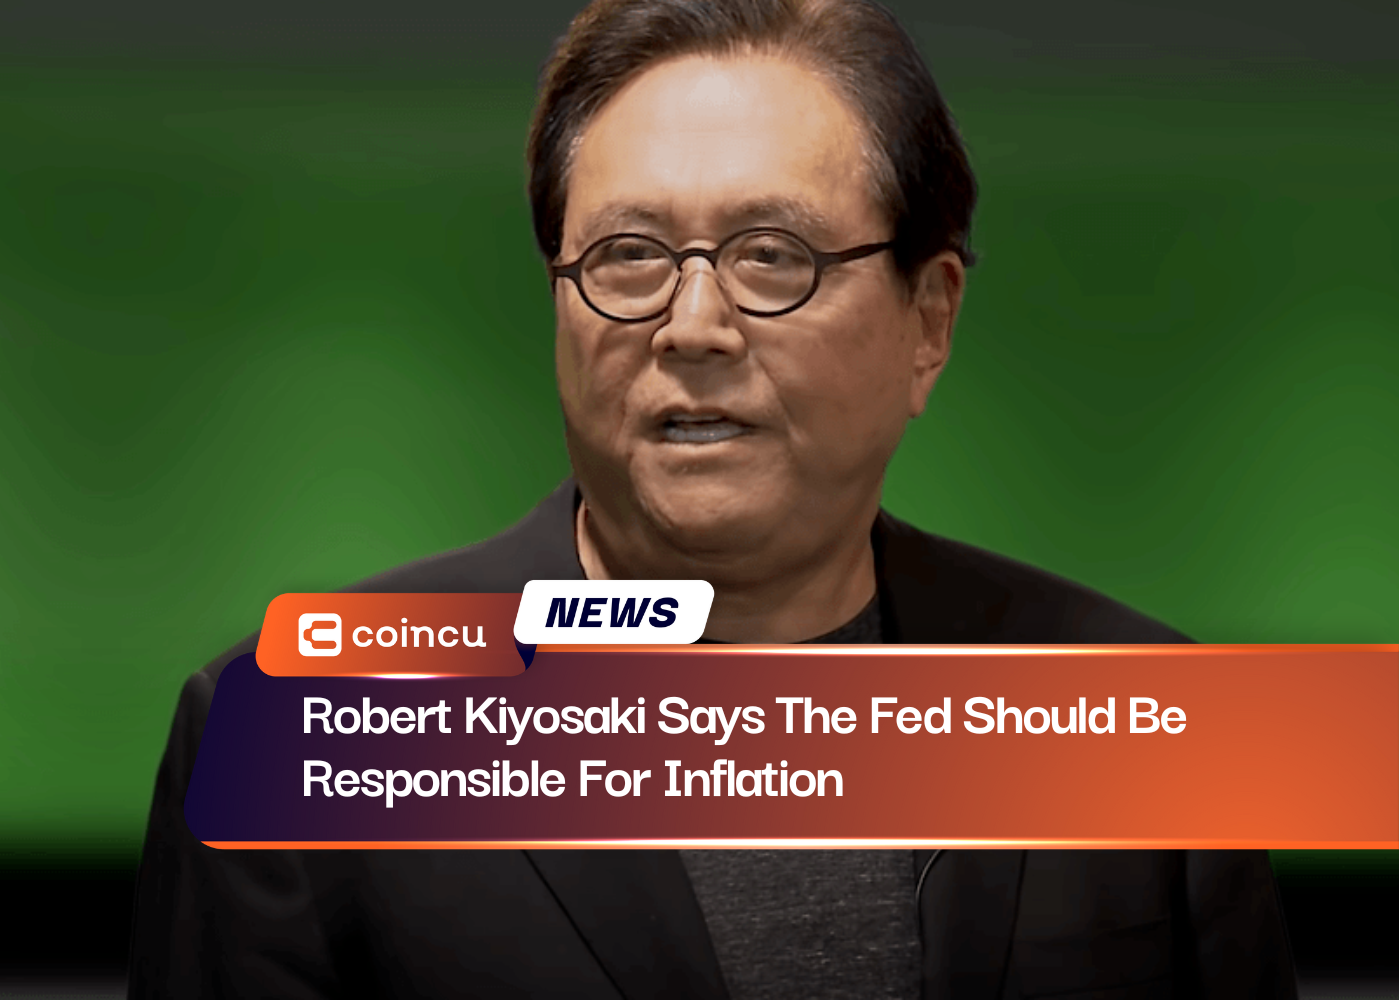 रॉबर्ट कियोसाकी का कहना है कि फेड को मुद्रास्फीति के लिए जिम्मेदार होना चाहिए